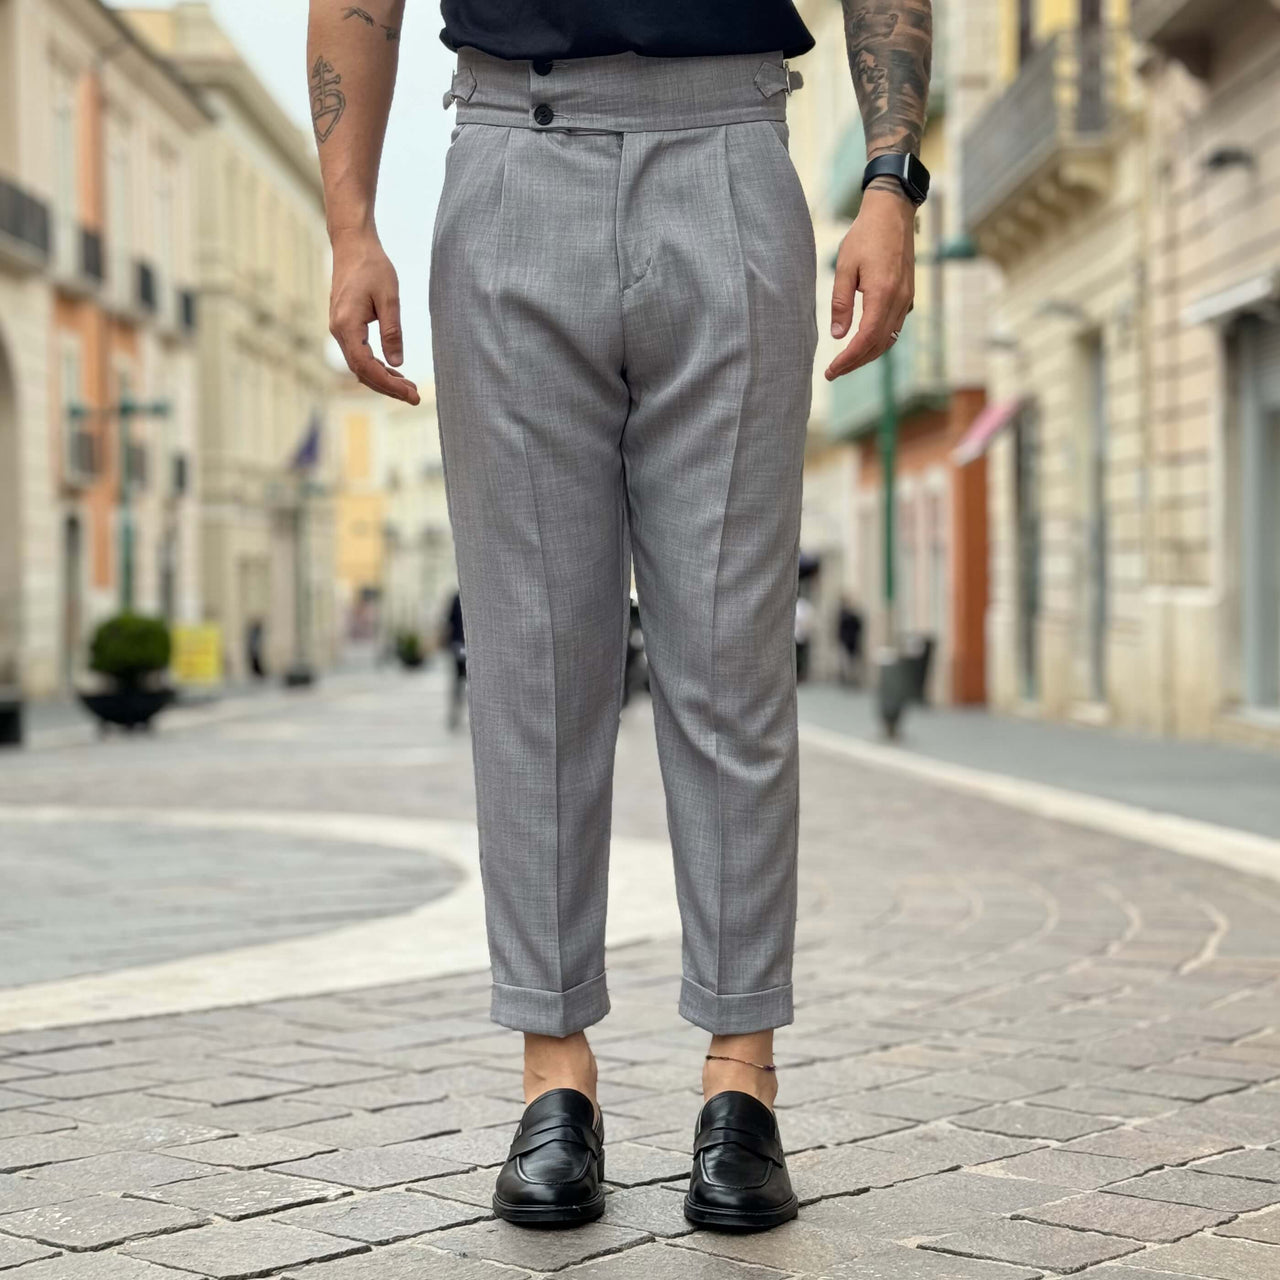 Pantalone grigio a vita alta con cinturini 2.0 - FLAG STORE